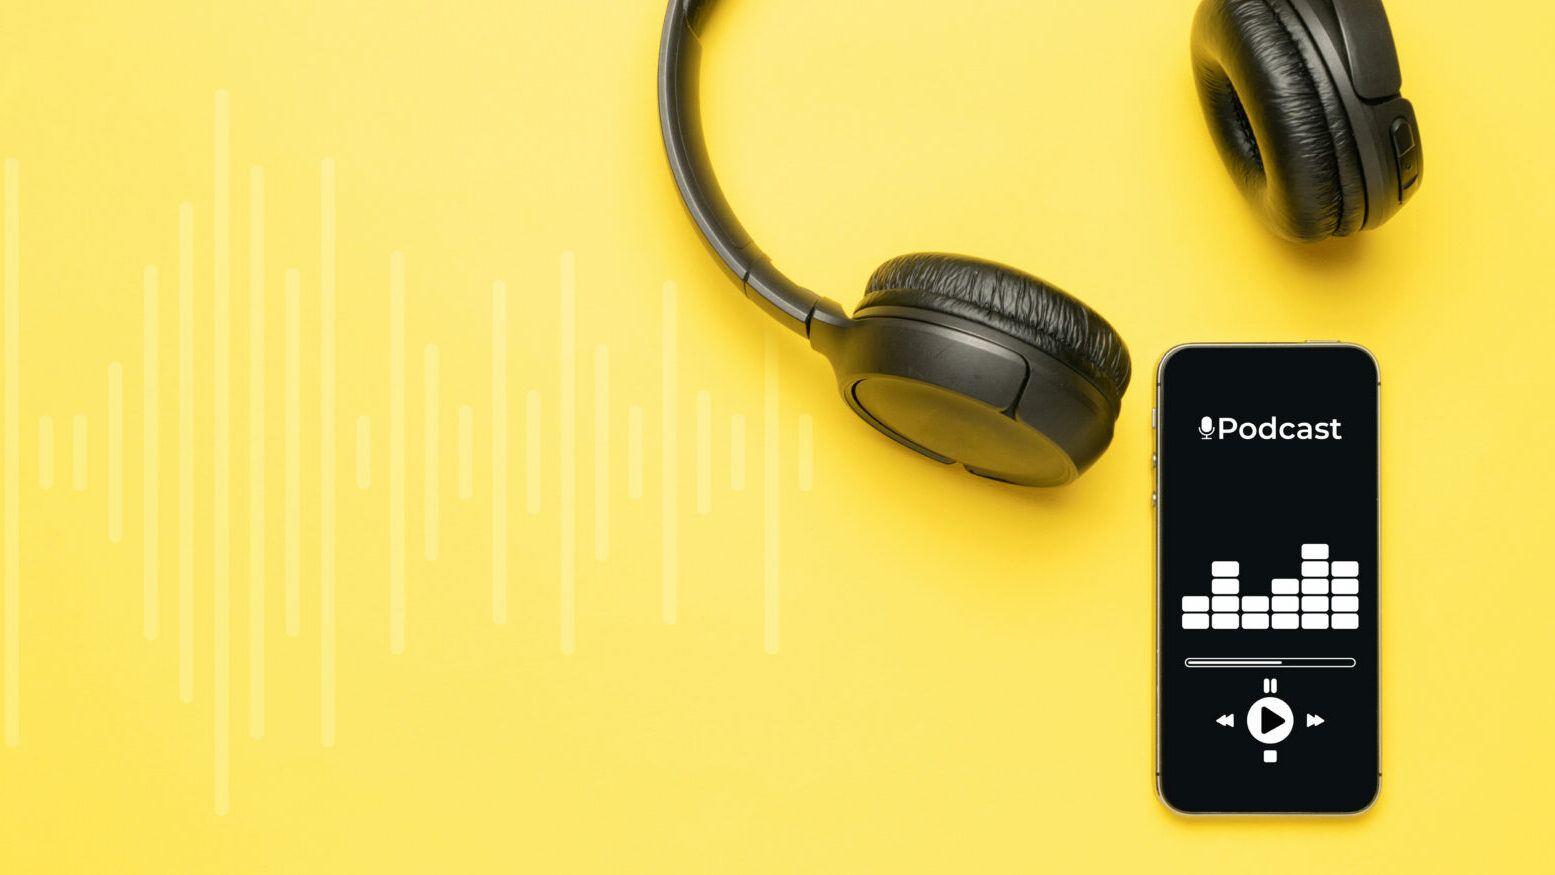 Legal Tech nebenher konsumieren – die besten Legal Tech-Podcasts im Überblick